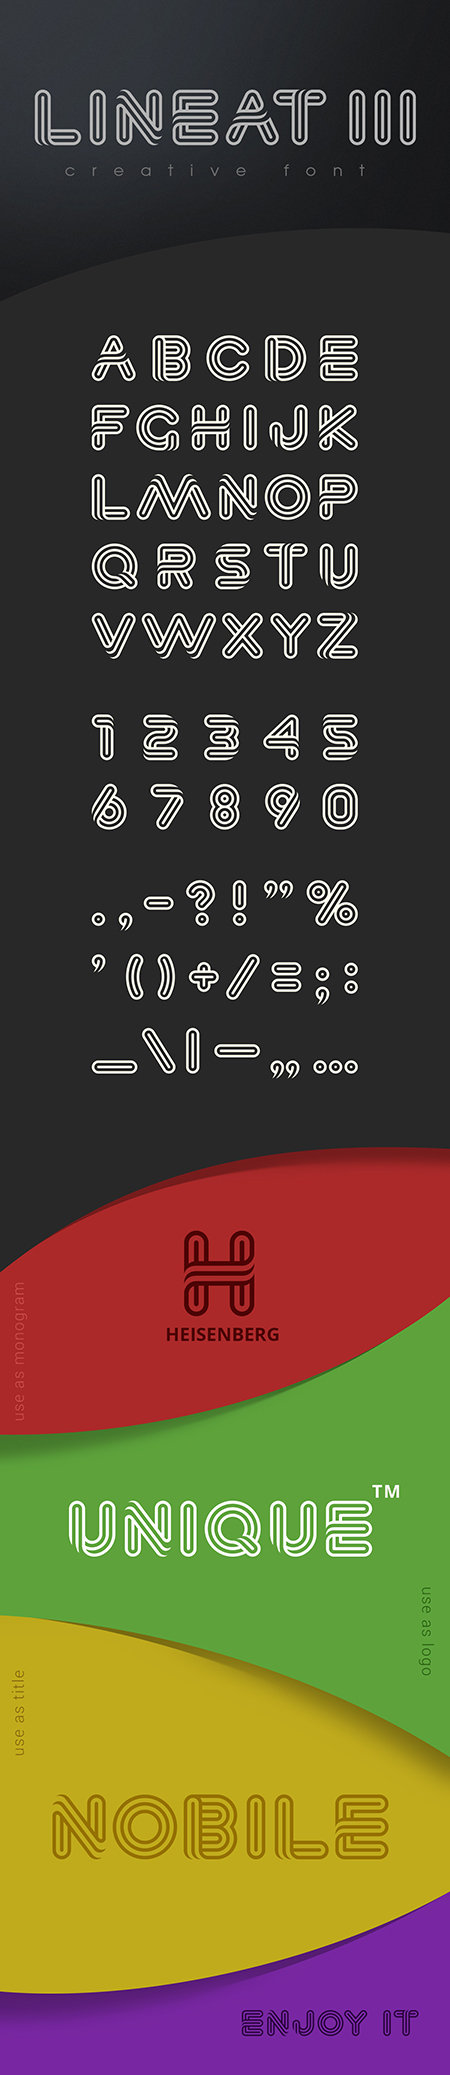 Lineat III font